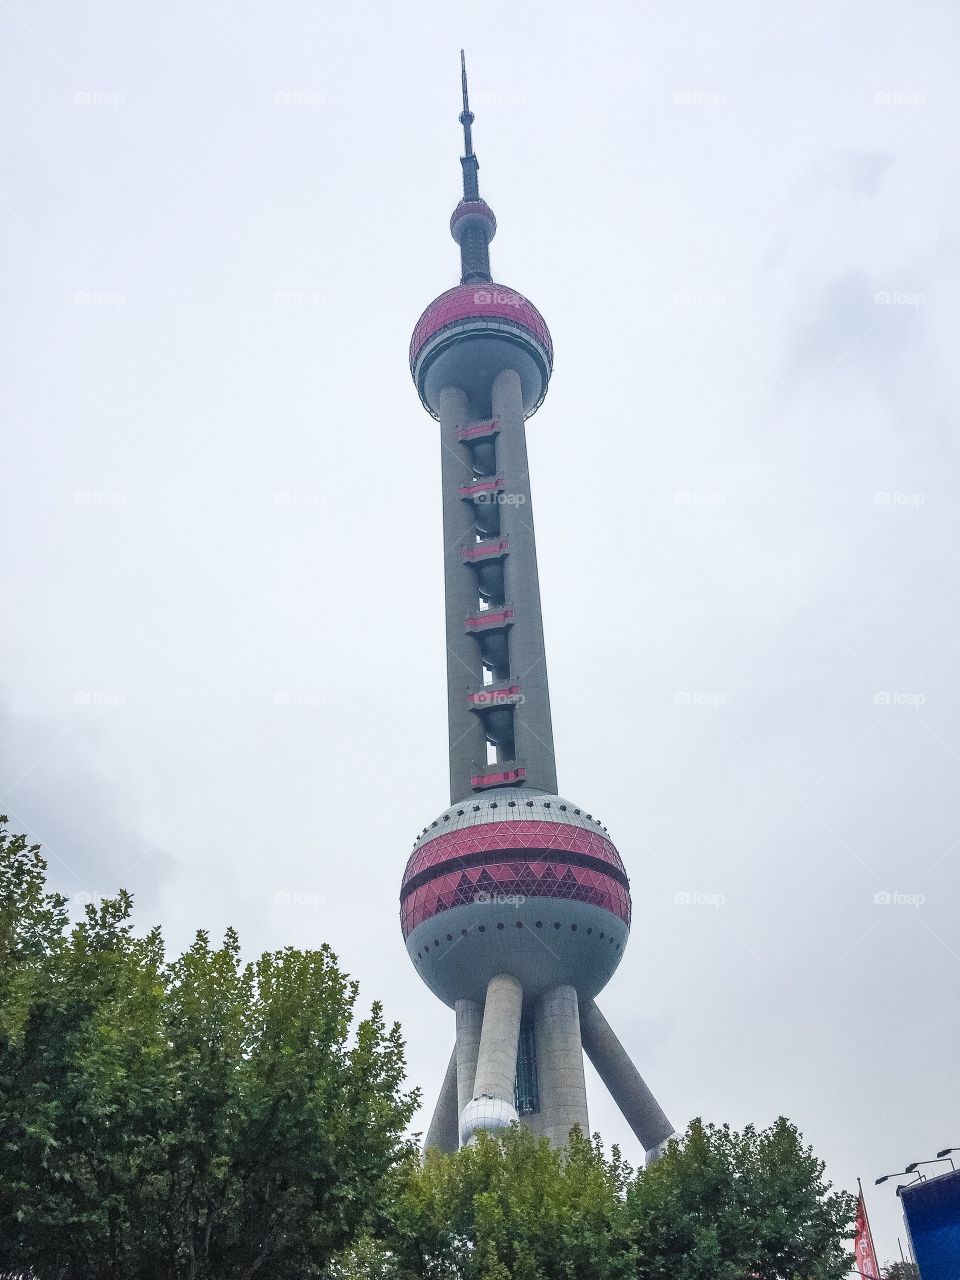 Shanghai landmark